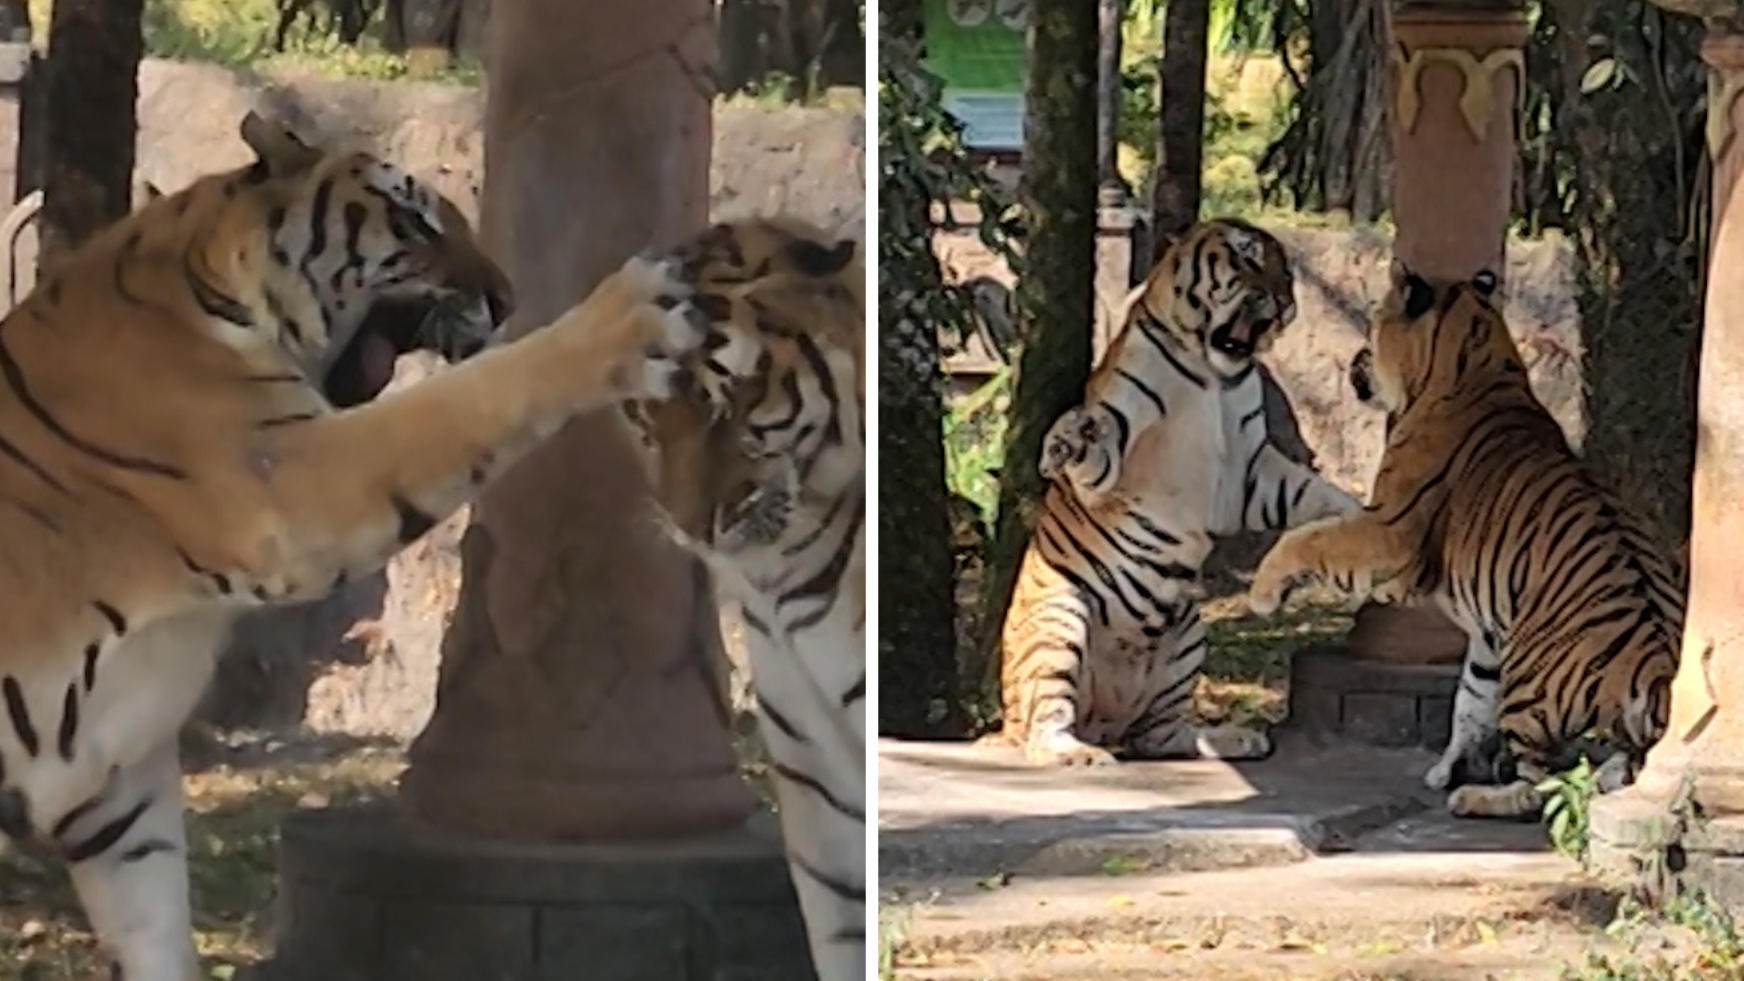 ¡Patas bailando!  Dos tigres peleando en el parque safari, una feroz batalla por el territorio